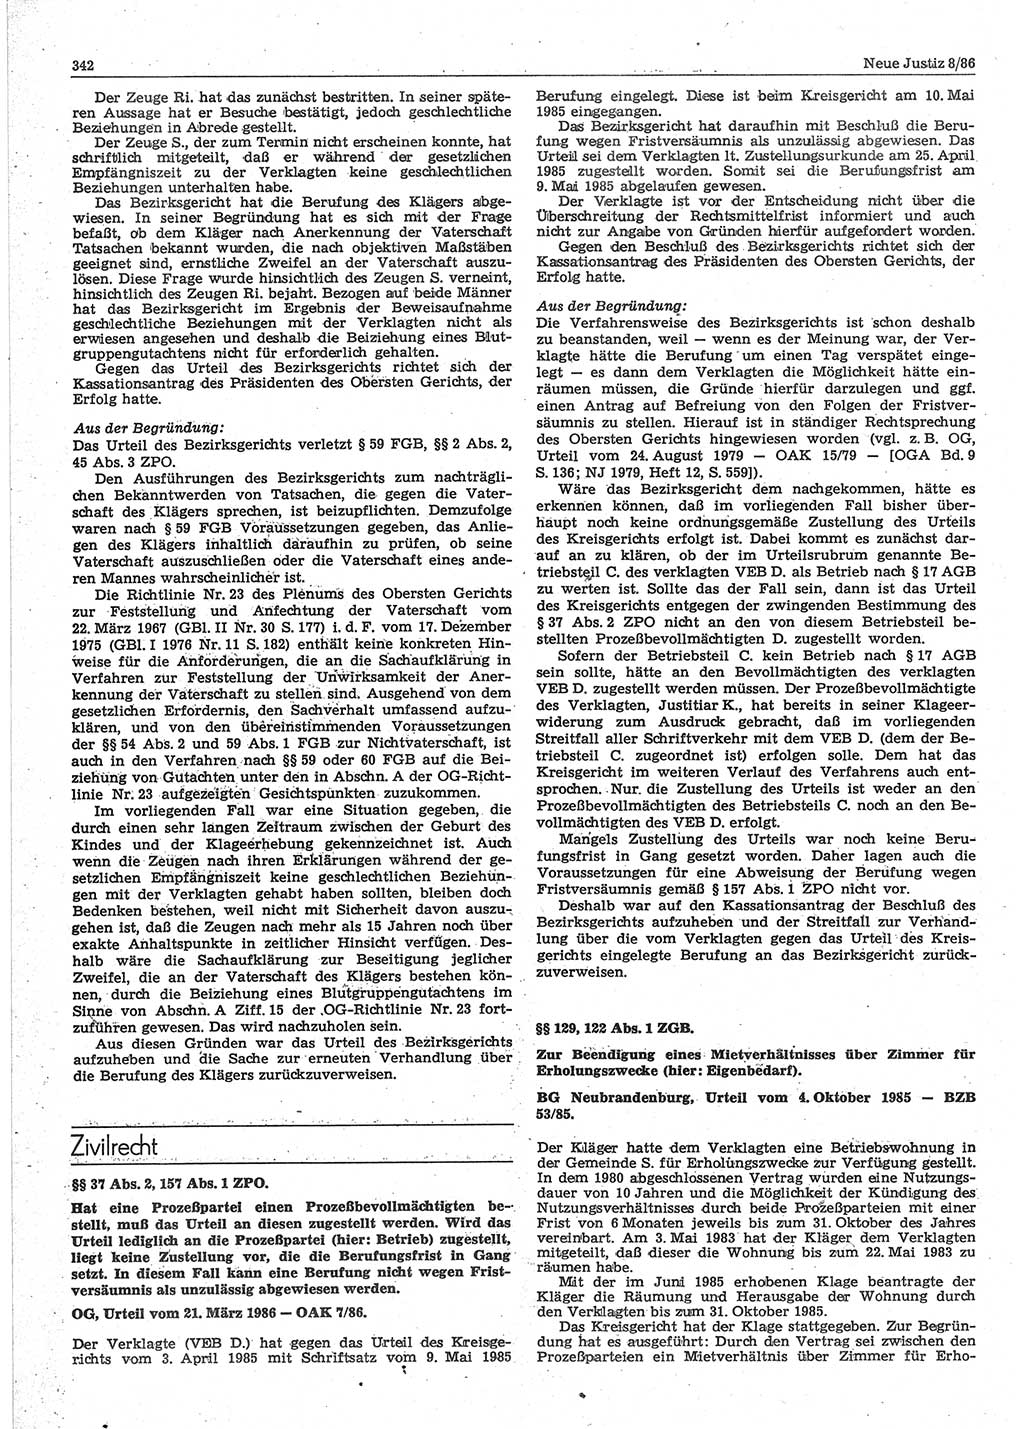 Neue Justiz (NJ), Zeitschrift für sozialistisches Recht und Gesetzlichkeit [Deutsche Demokratische Republik (DDR)], 40. Jahrgang 1986, Seite 342 (NJ DDR 1986, S. 342)